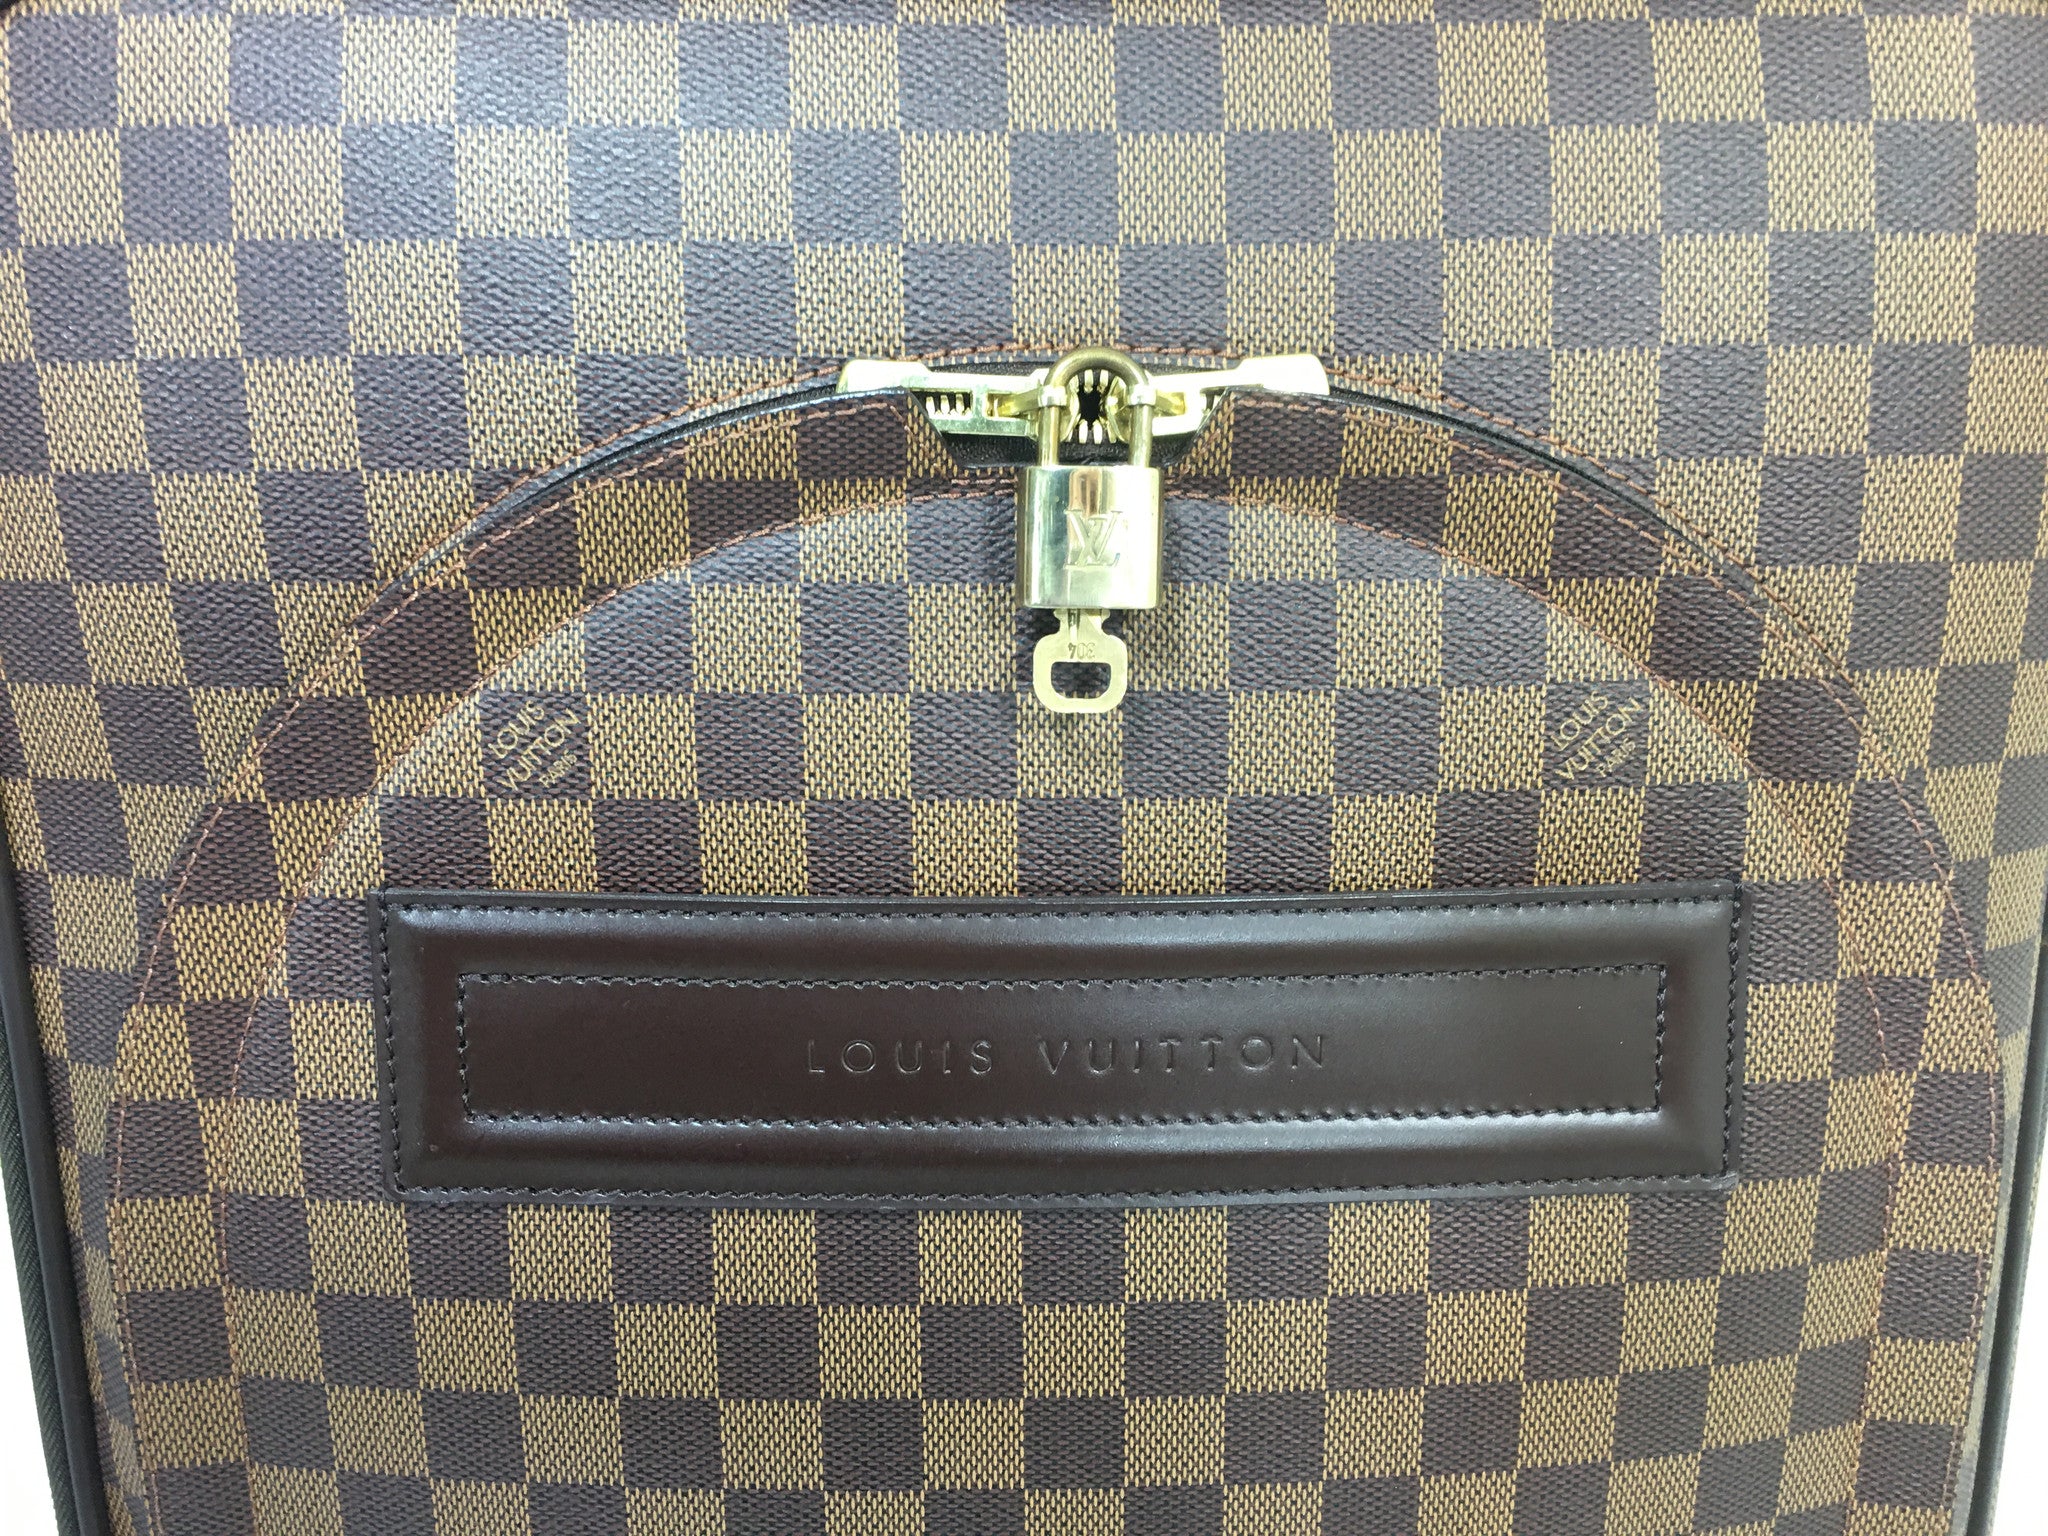 Louis Vuitton Damier Ebene Pégase Légère 55 - Brown Luggage and